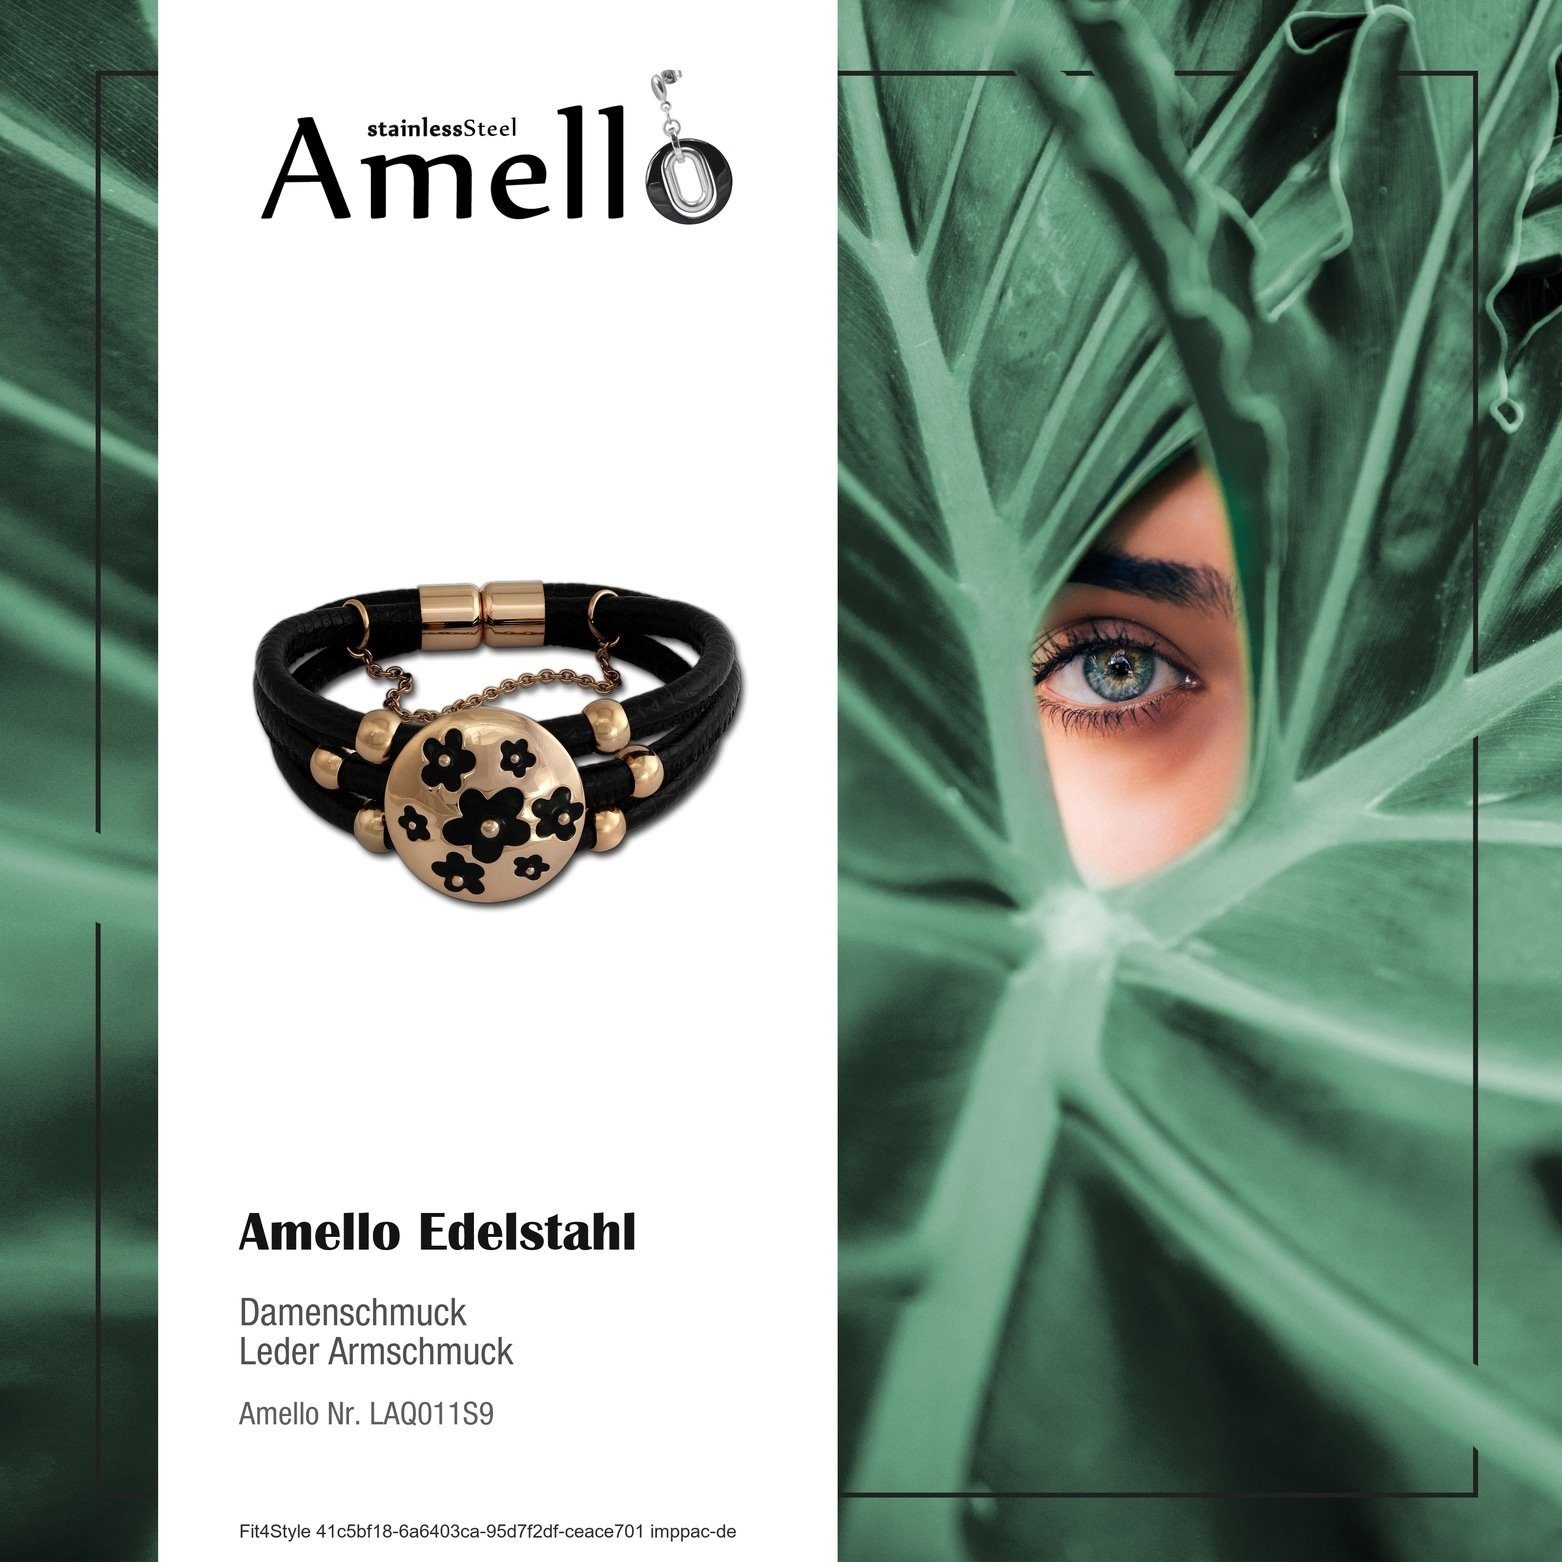 Amello Damen Armband Amello Damen vergoldet Blumen Armband Edelstahlarmband Steel), (Roségol (Blumen) Edelstahl (Stainless Leder (Armband),